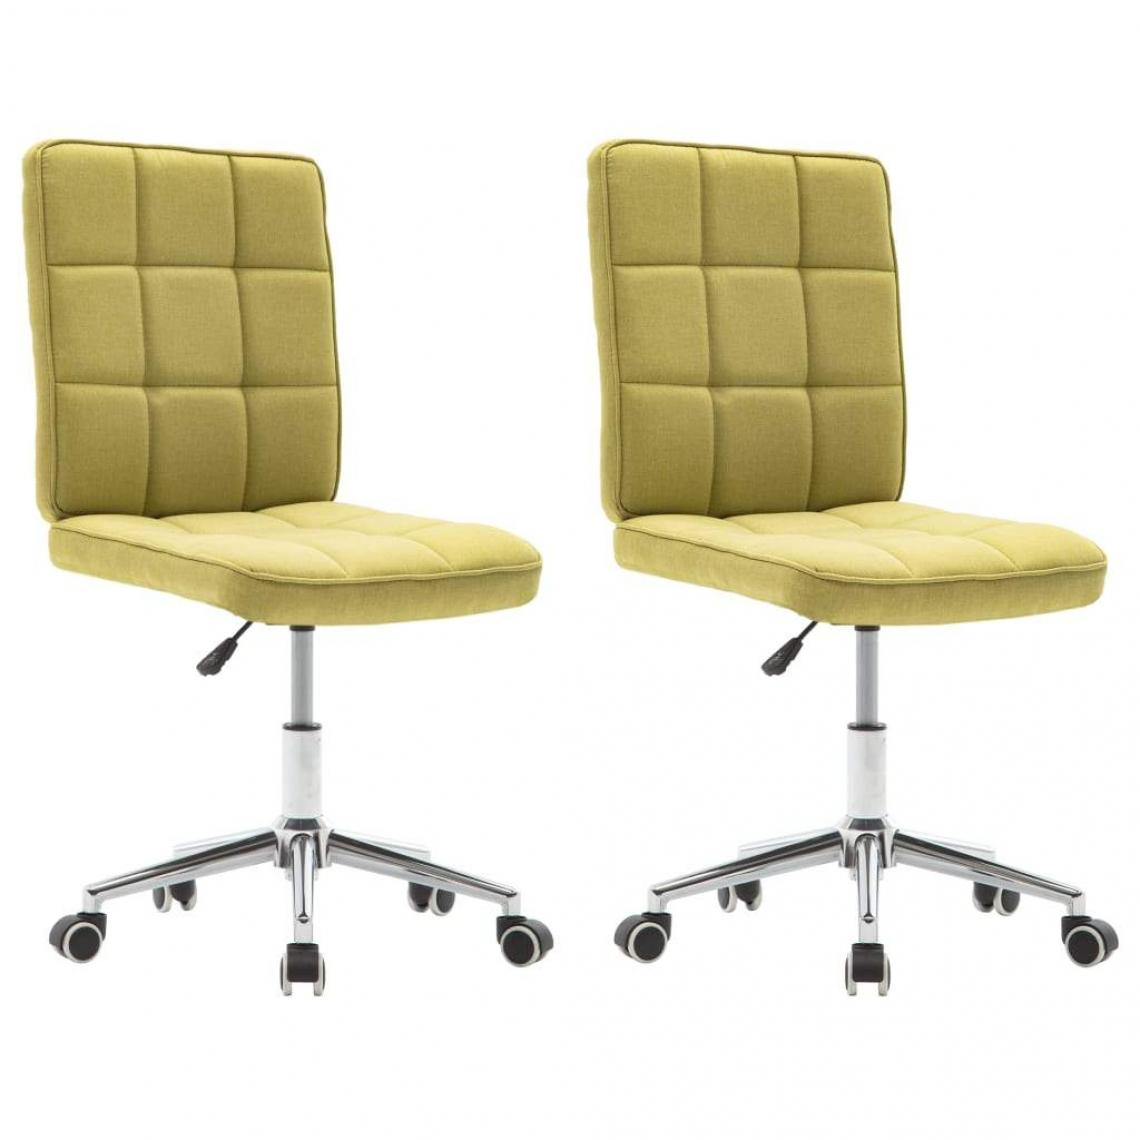 Decoshop26 - Lot de 2 chaises de salle à manger cuisine design moderne tissu vert CDS021121 - Chaises